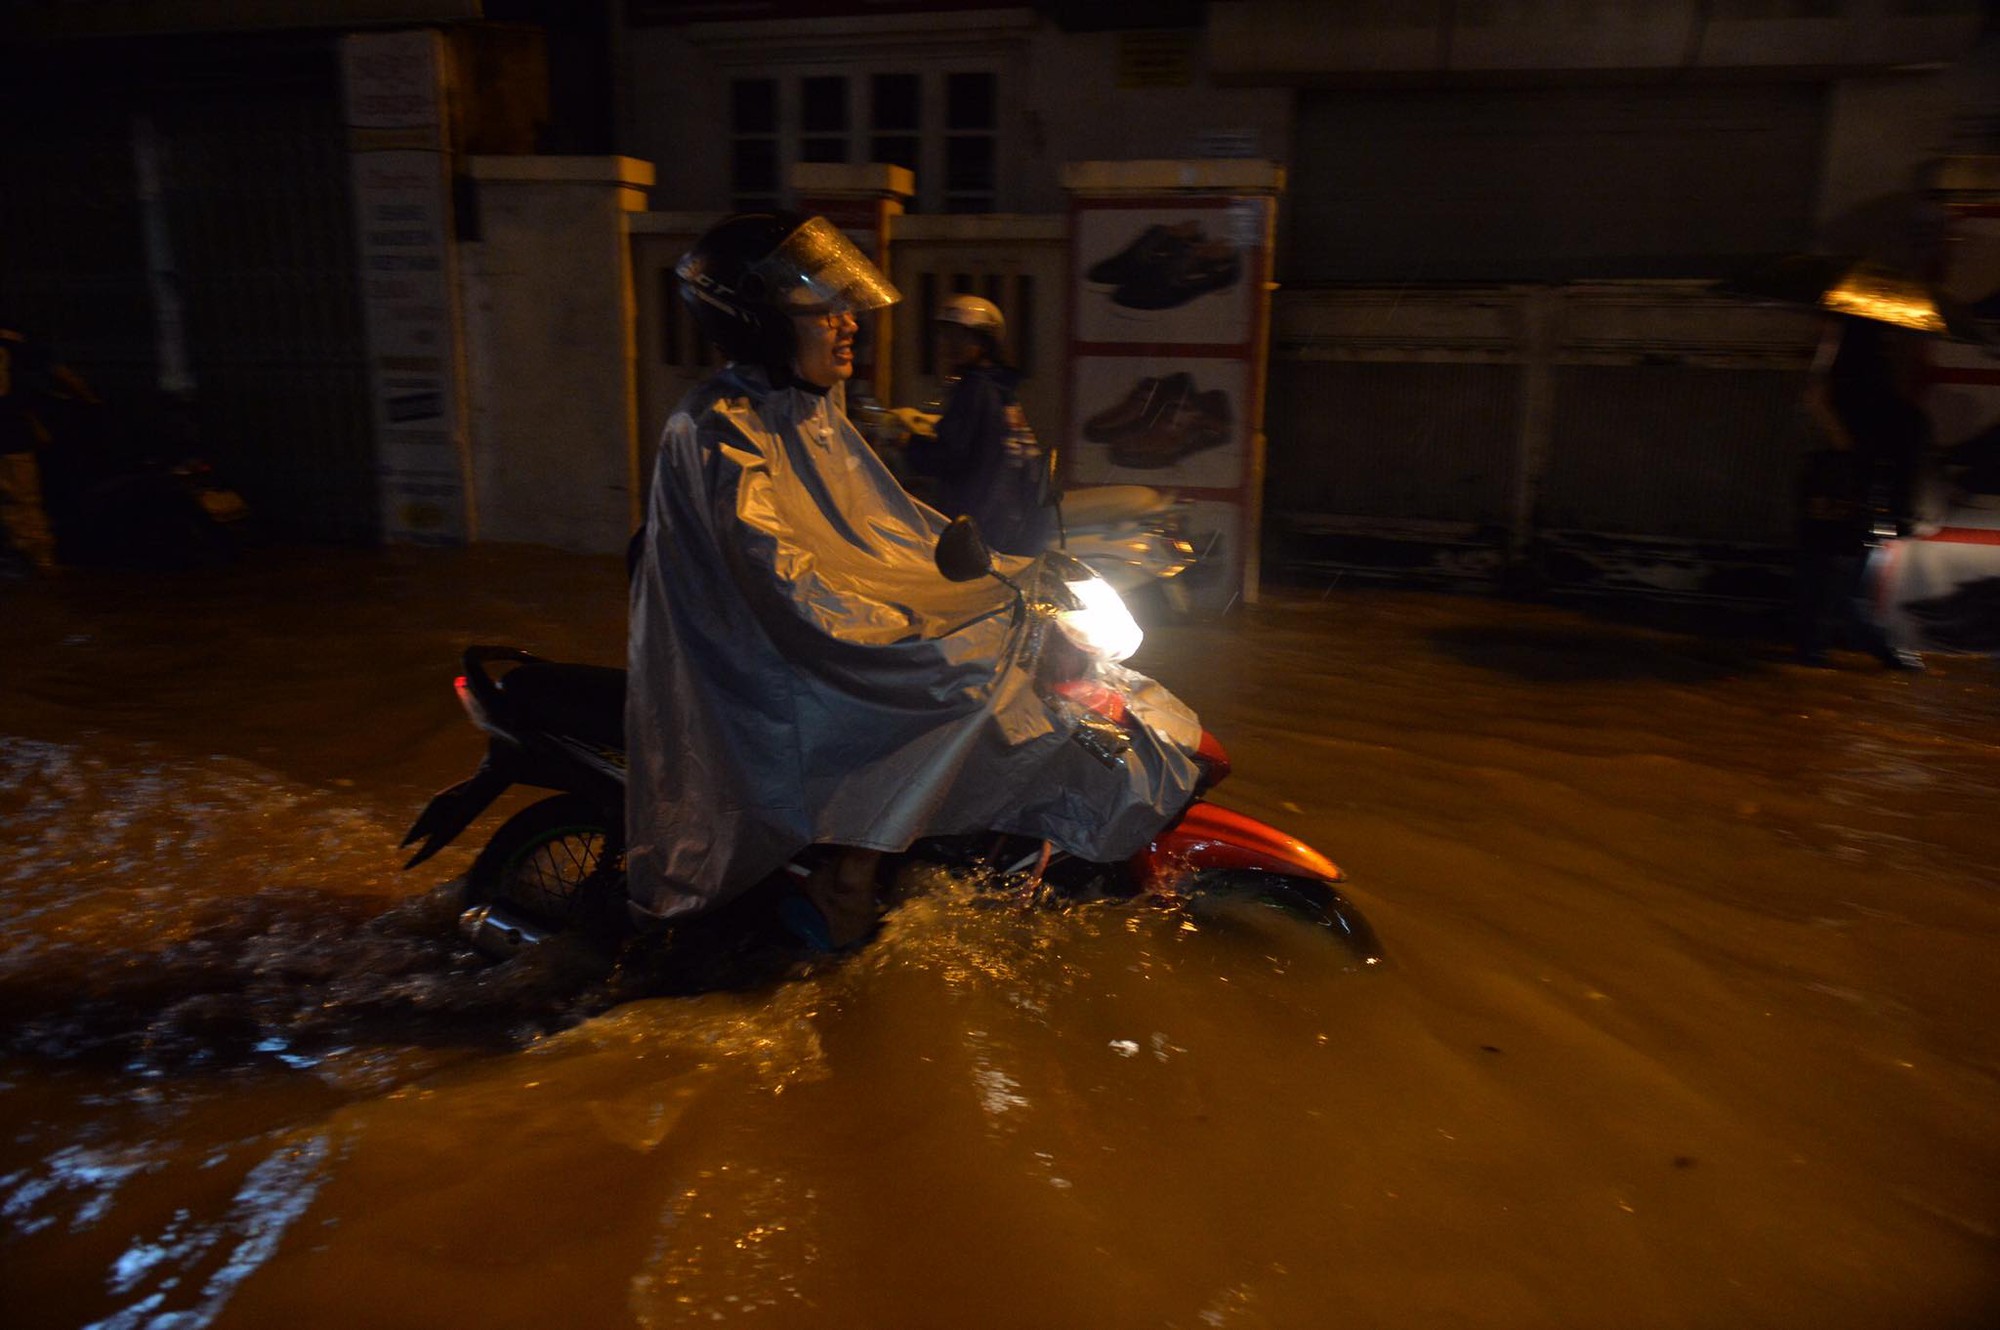 Dân công sở Hà Nội than trời trong ngày mưa ngập và tắc kinh hoàng: Có vài km mà mất tới 2, thậm chí 3 tiếng đồng hồ mới về đến nhà - Ảnh 7.